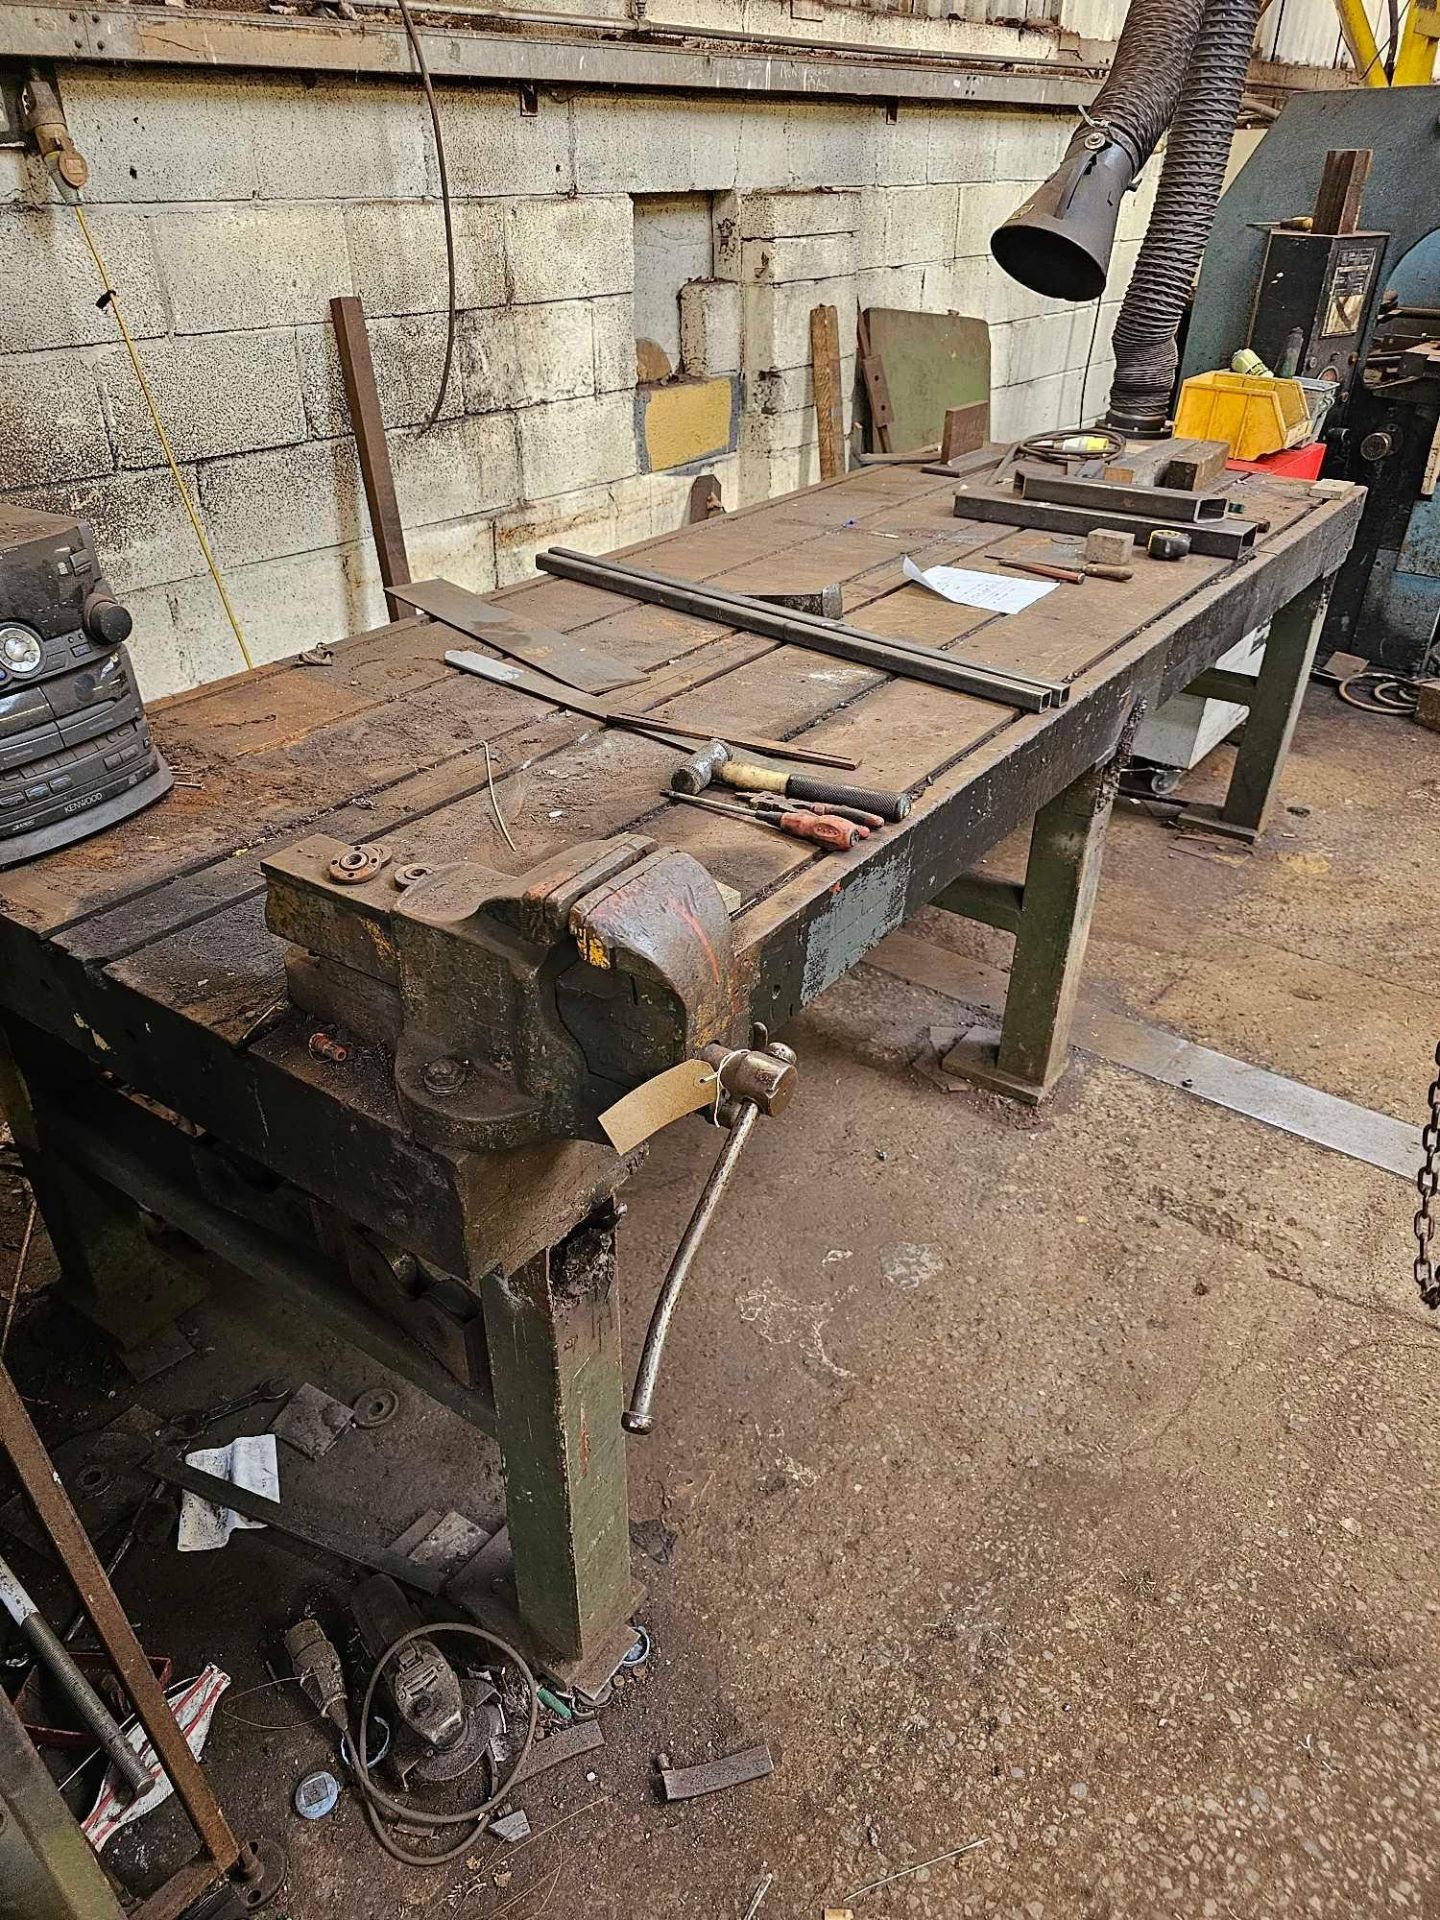 Cast Steel Engineers Marking Out Work Bench 305 x 110 x 89cm Weight 1600kg - Bild 5 aus 5